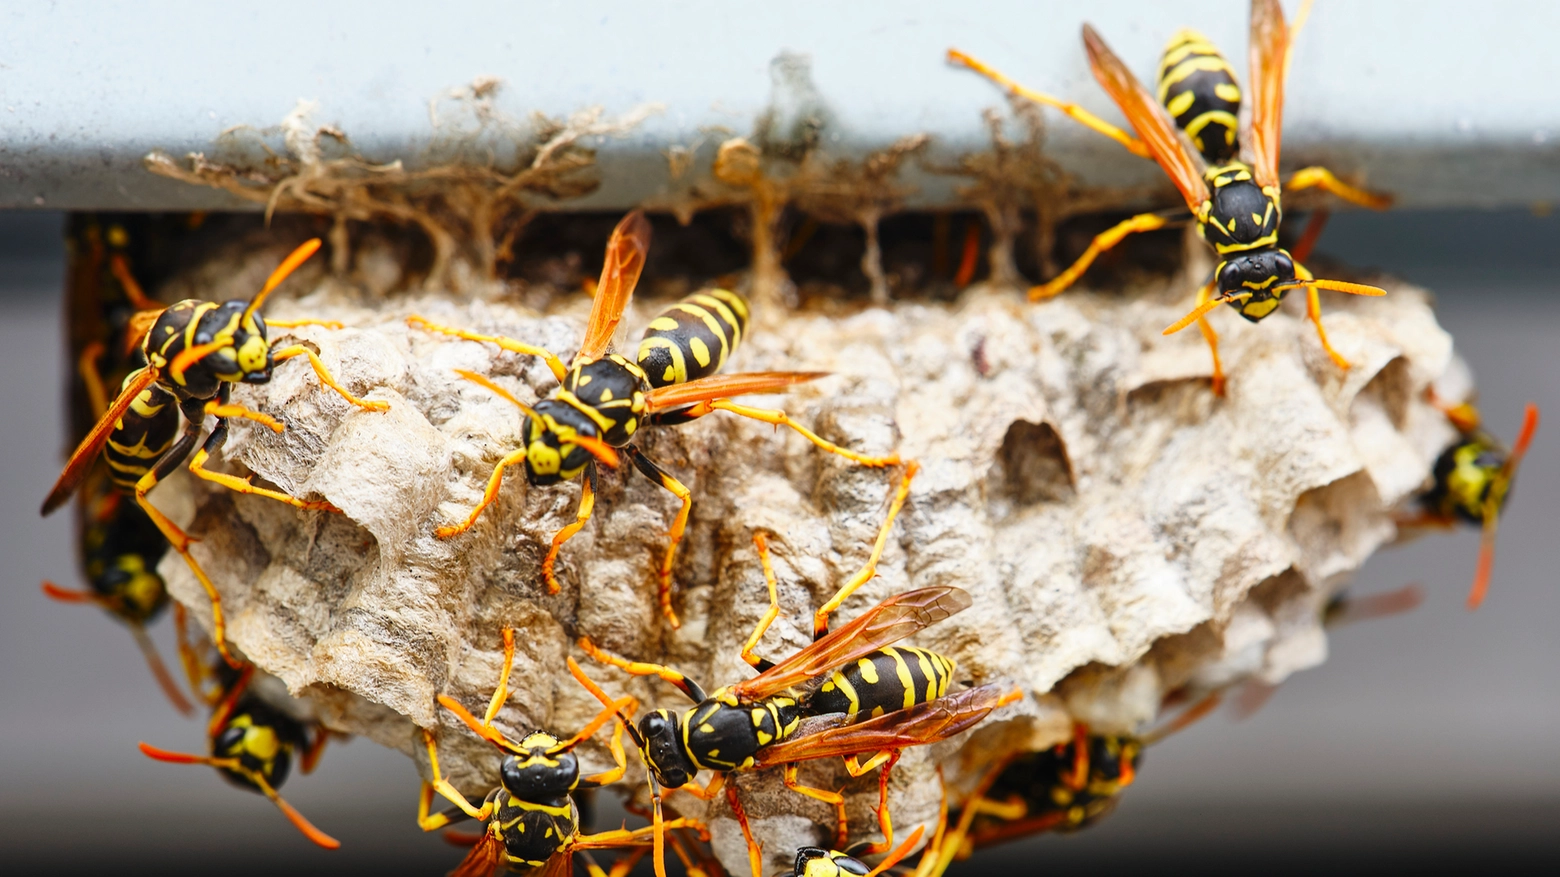 Un nido di vespe (archivio): un uomo nel ha prestato uno che era stato costruito sottoterra, è stato punto ed è morto poiché allergico